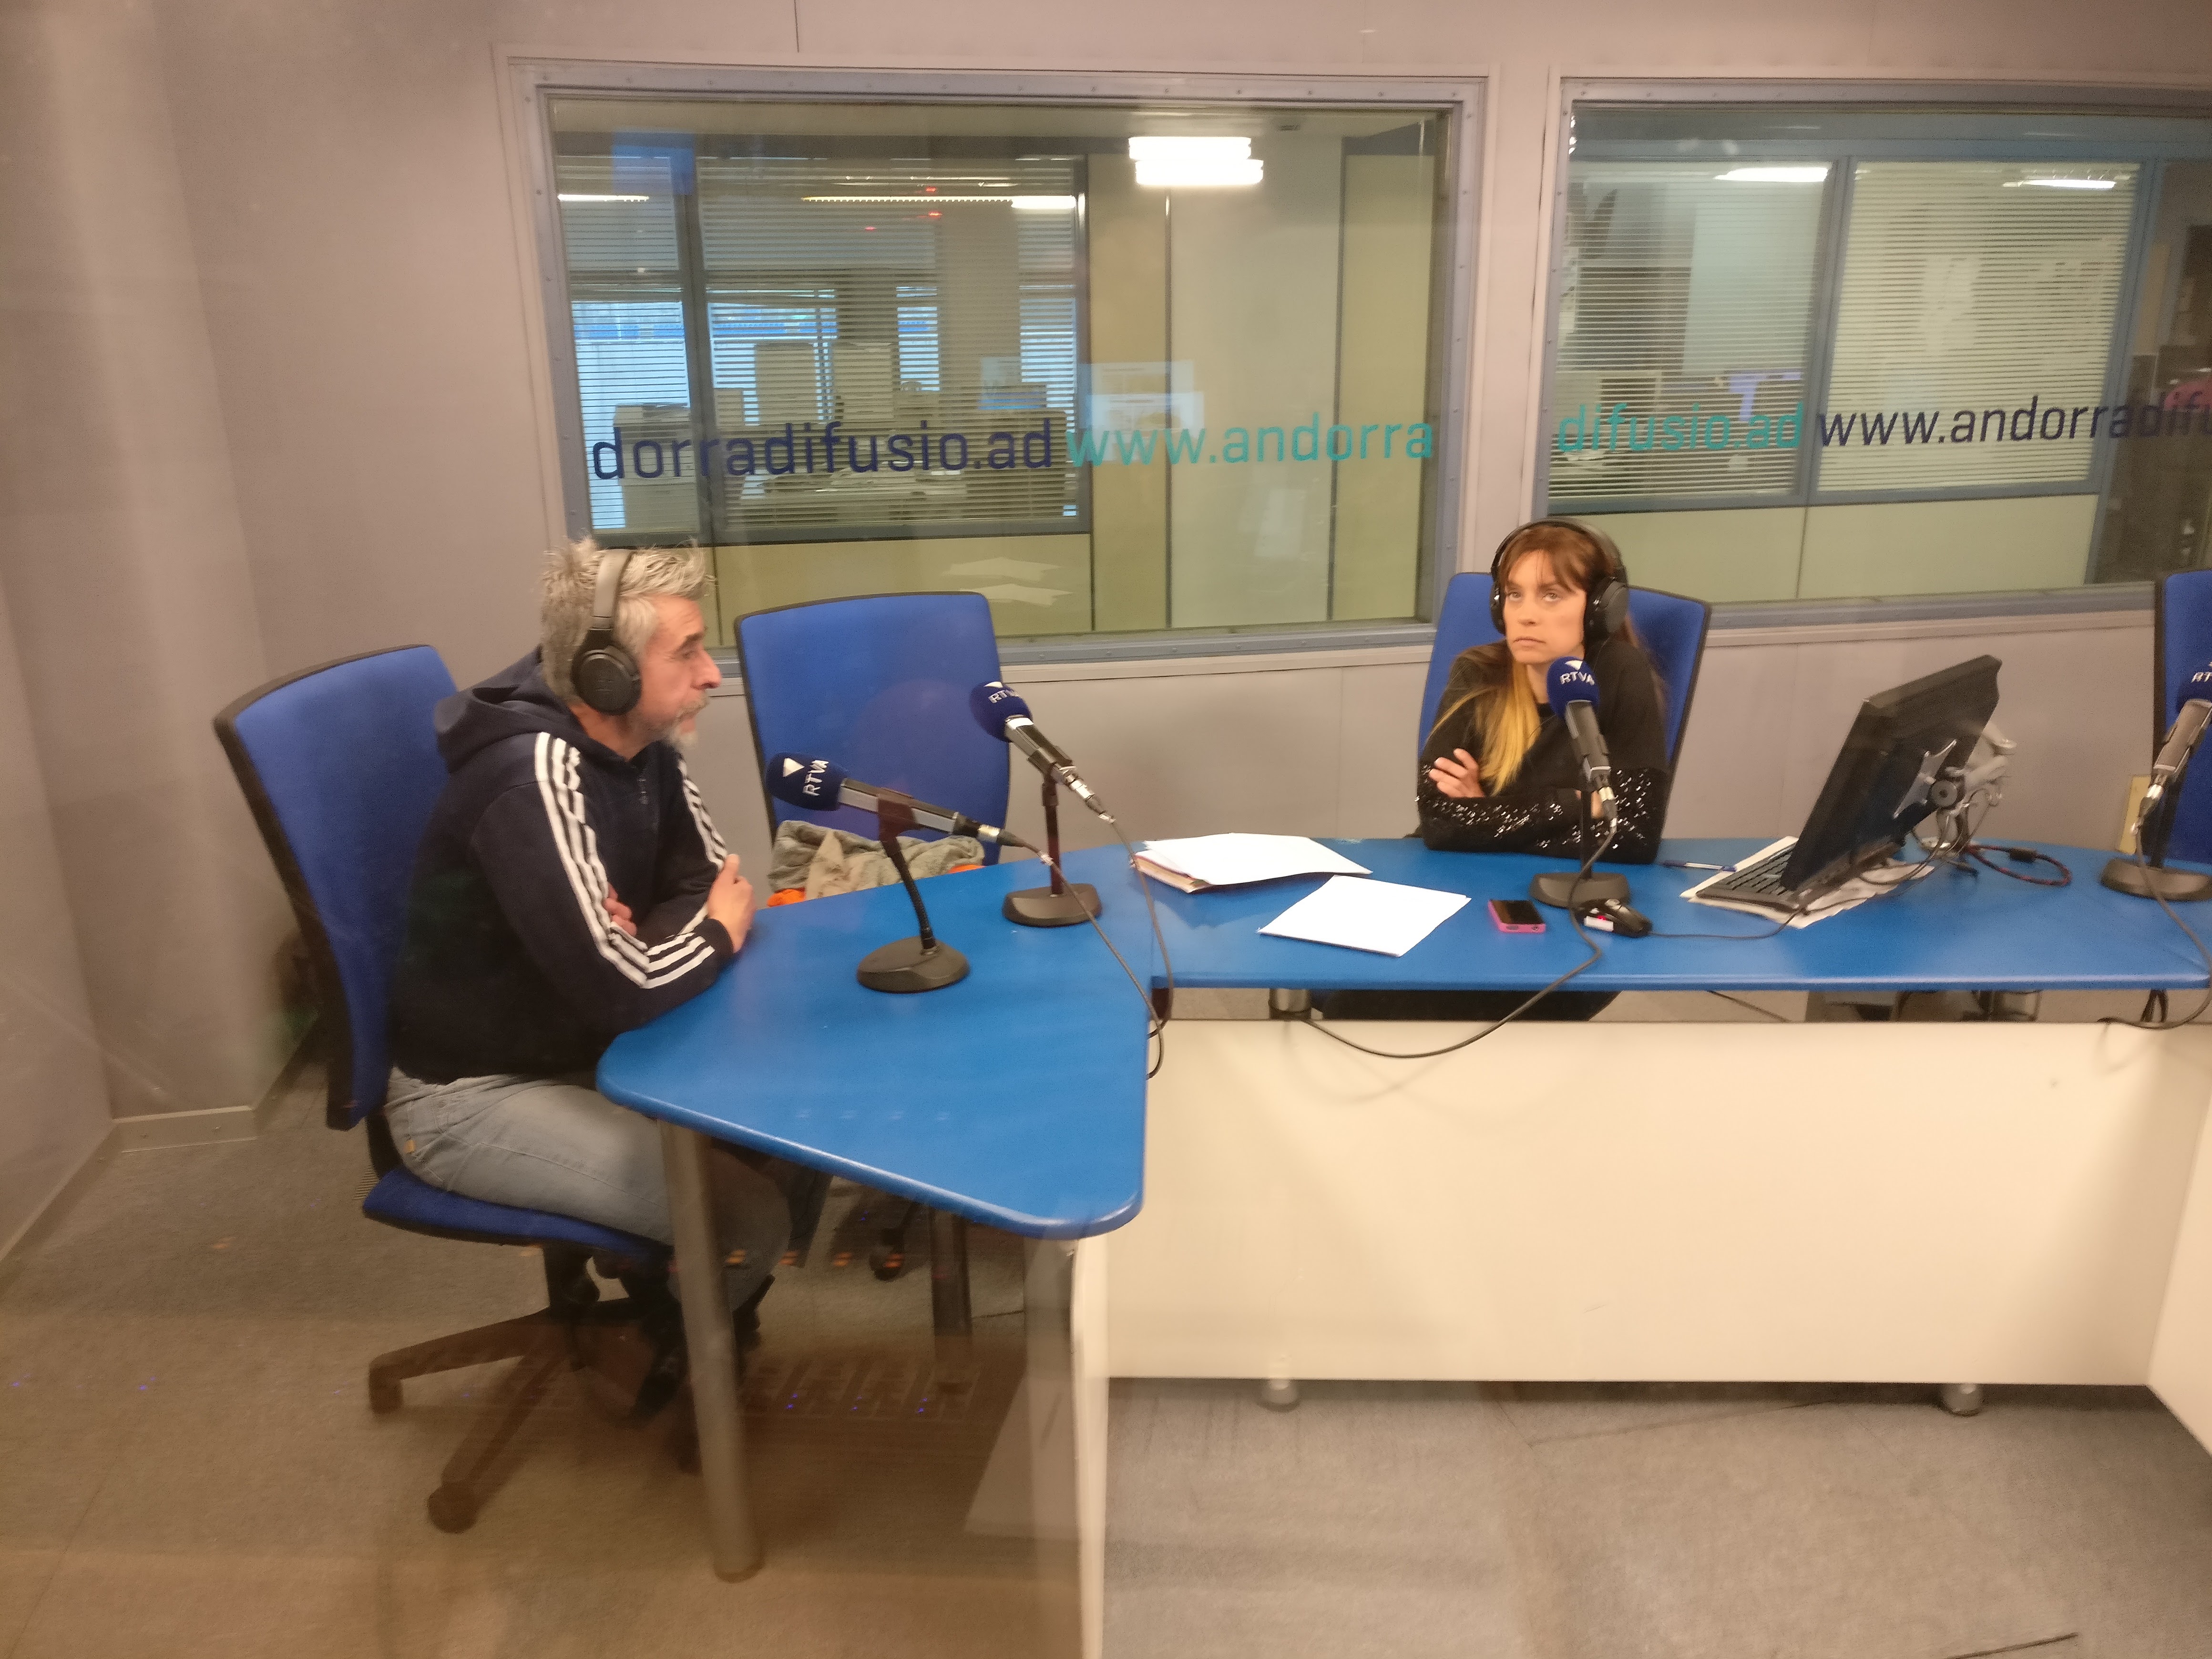 Tertúlia amb Juli Fernández i Andoni Azurmendi 27 de març del 2017